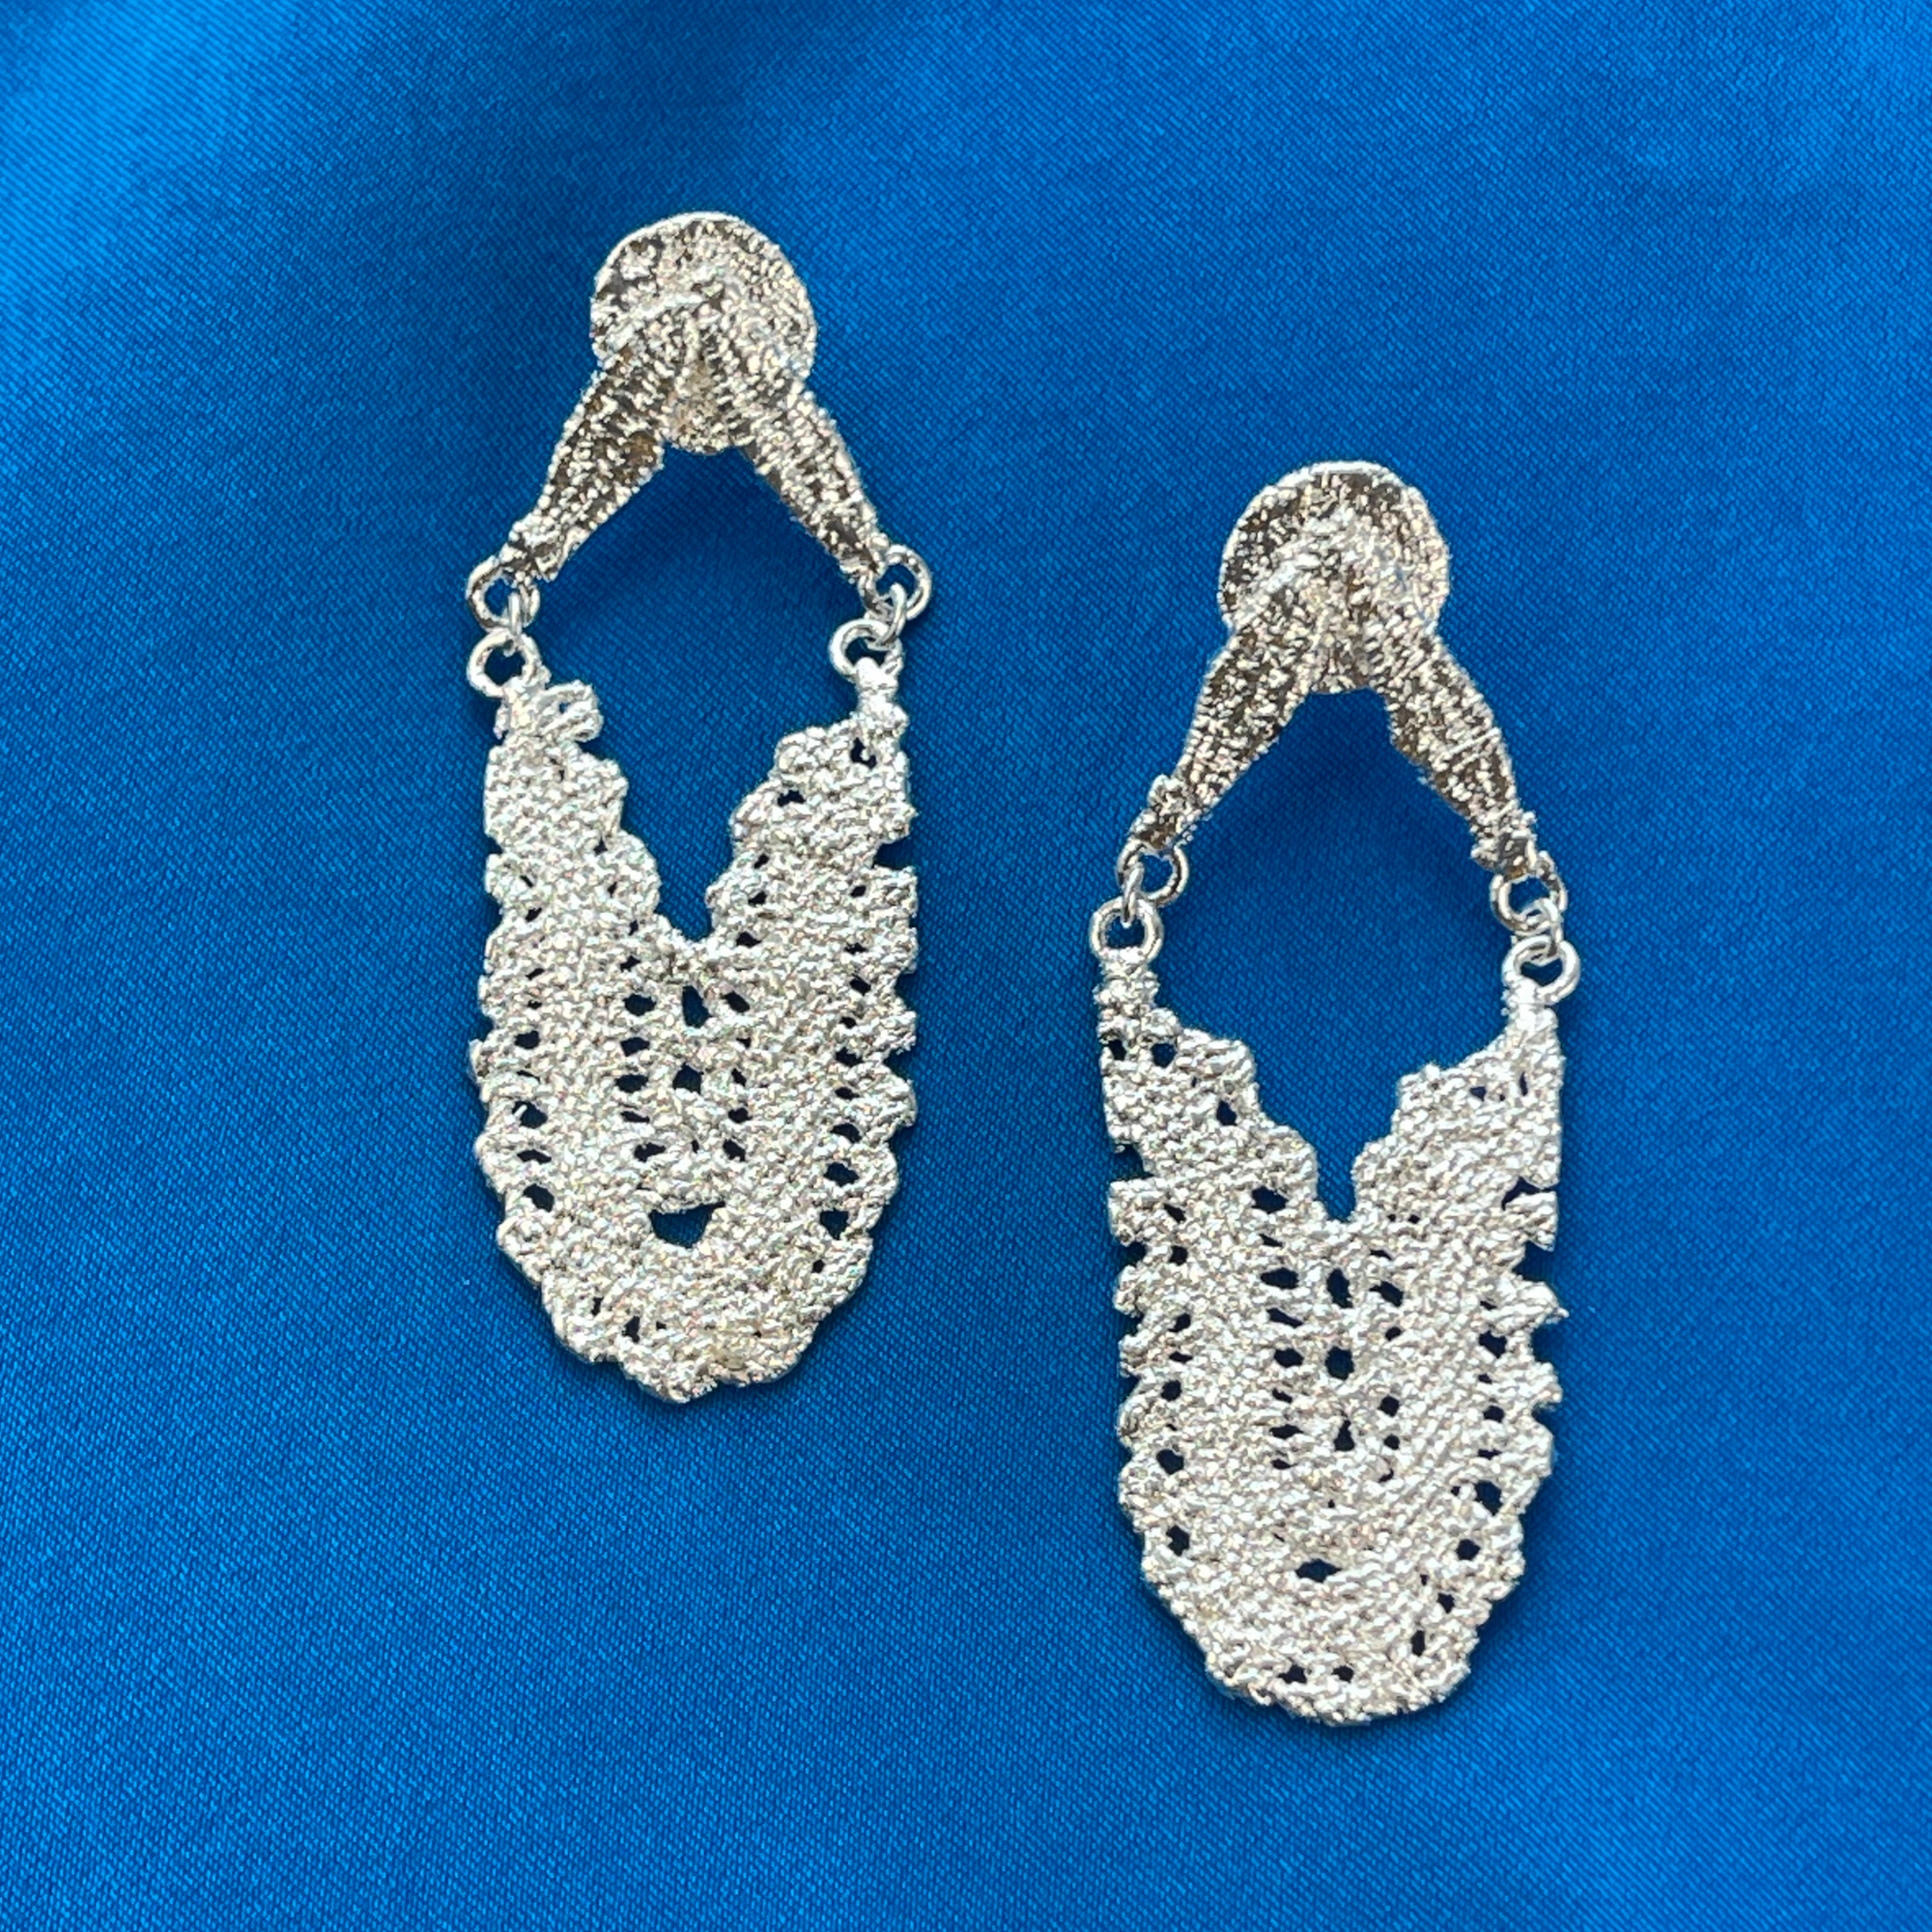 Maj-Britt lace earrings from Swedish 1940s lace in sterling silver.